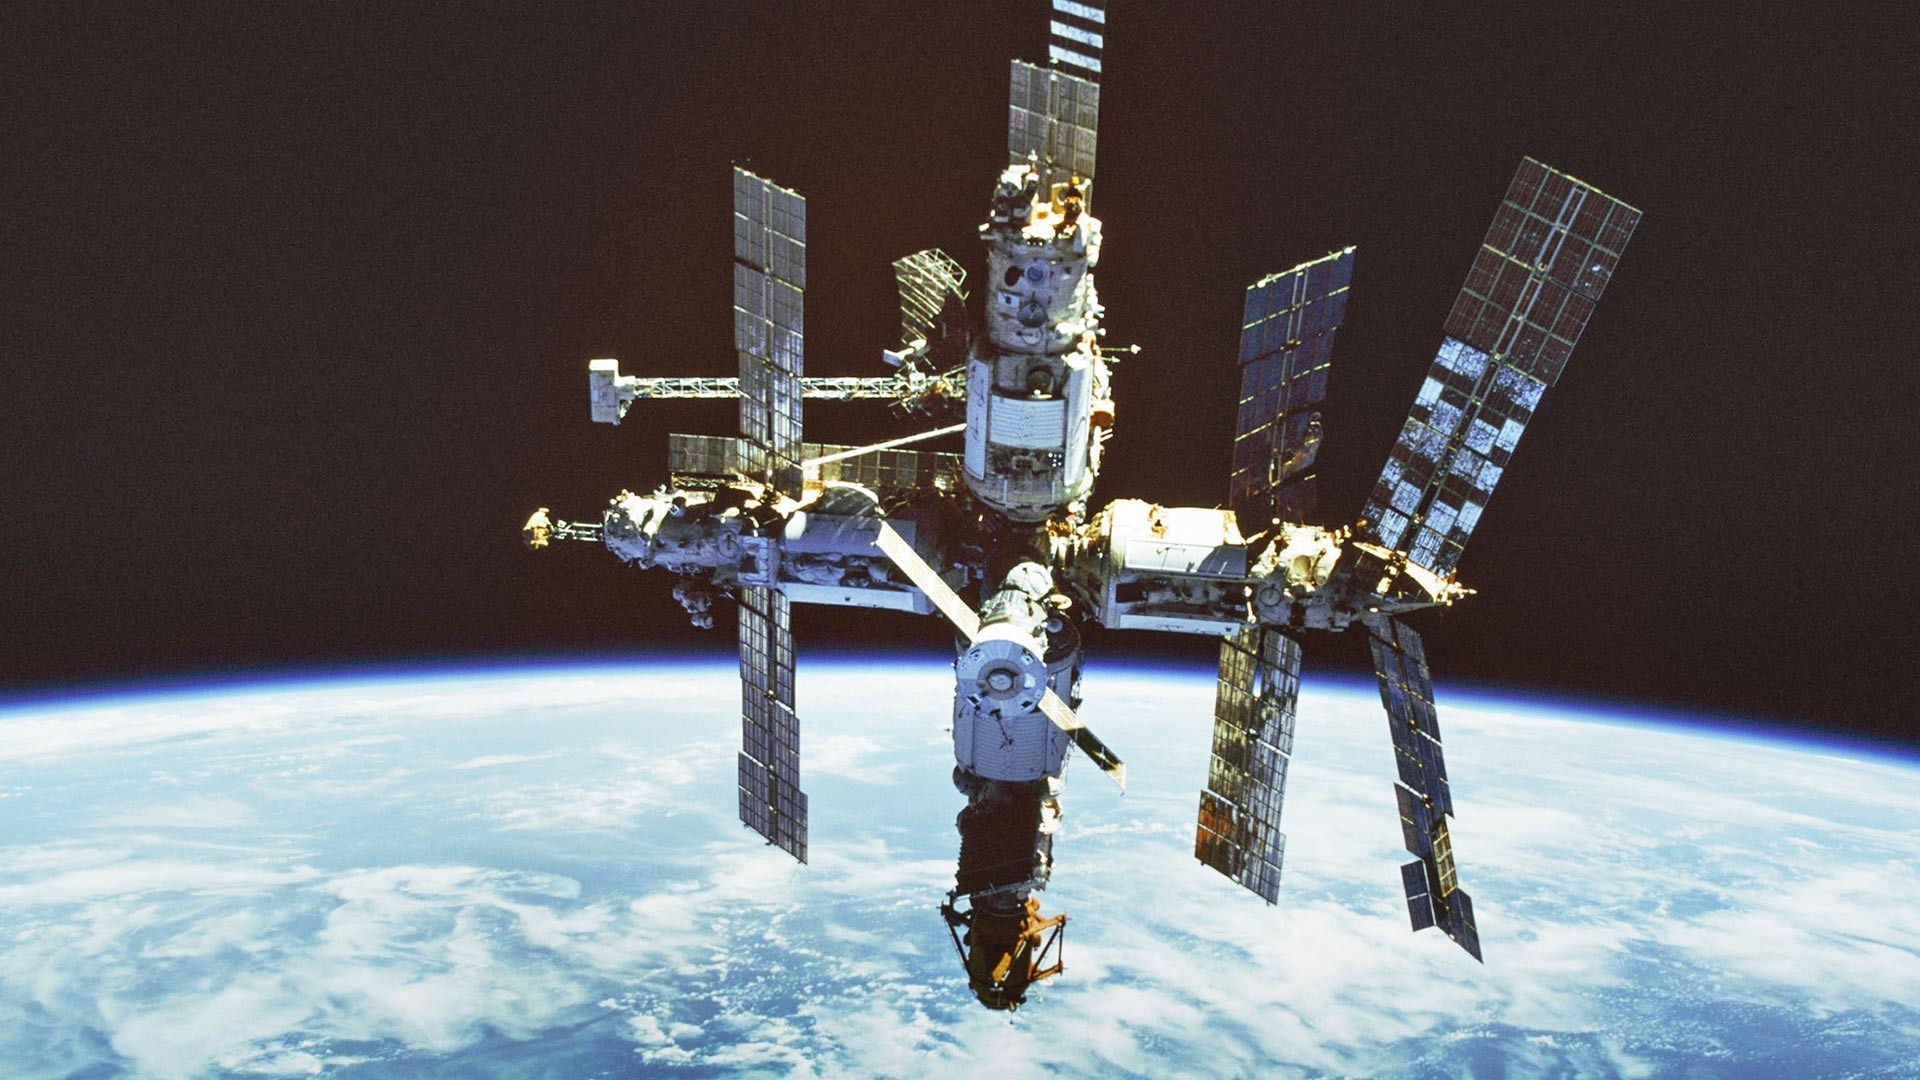 Vesoljska postaja Mir (v orbiti od 1986 do 2001)